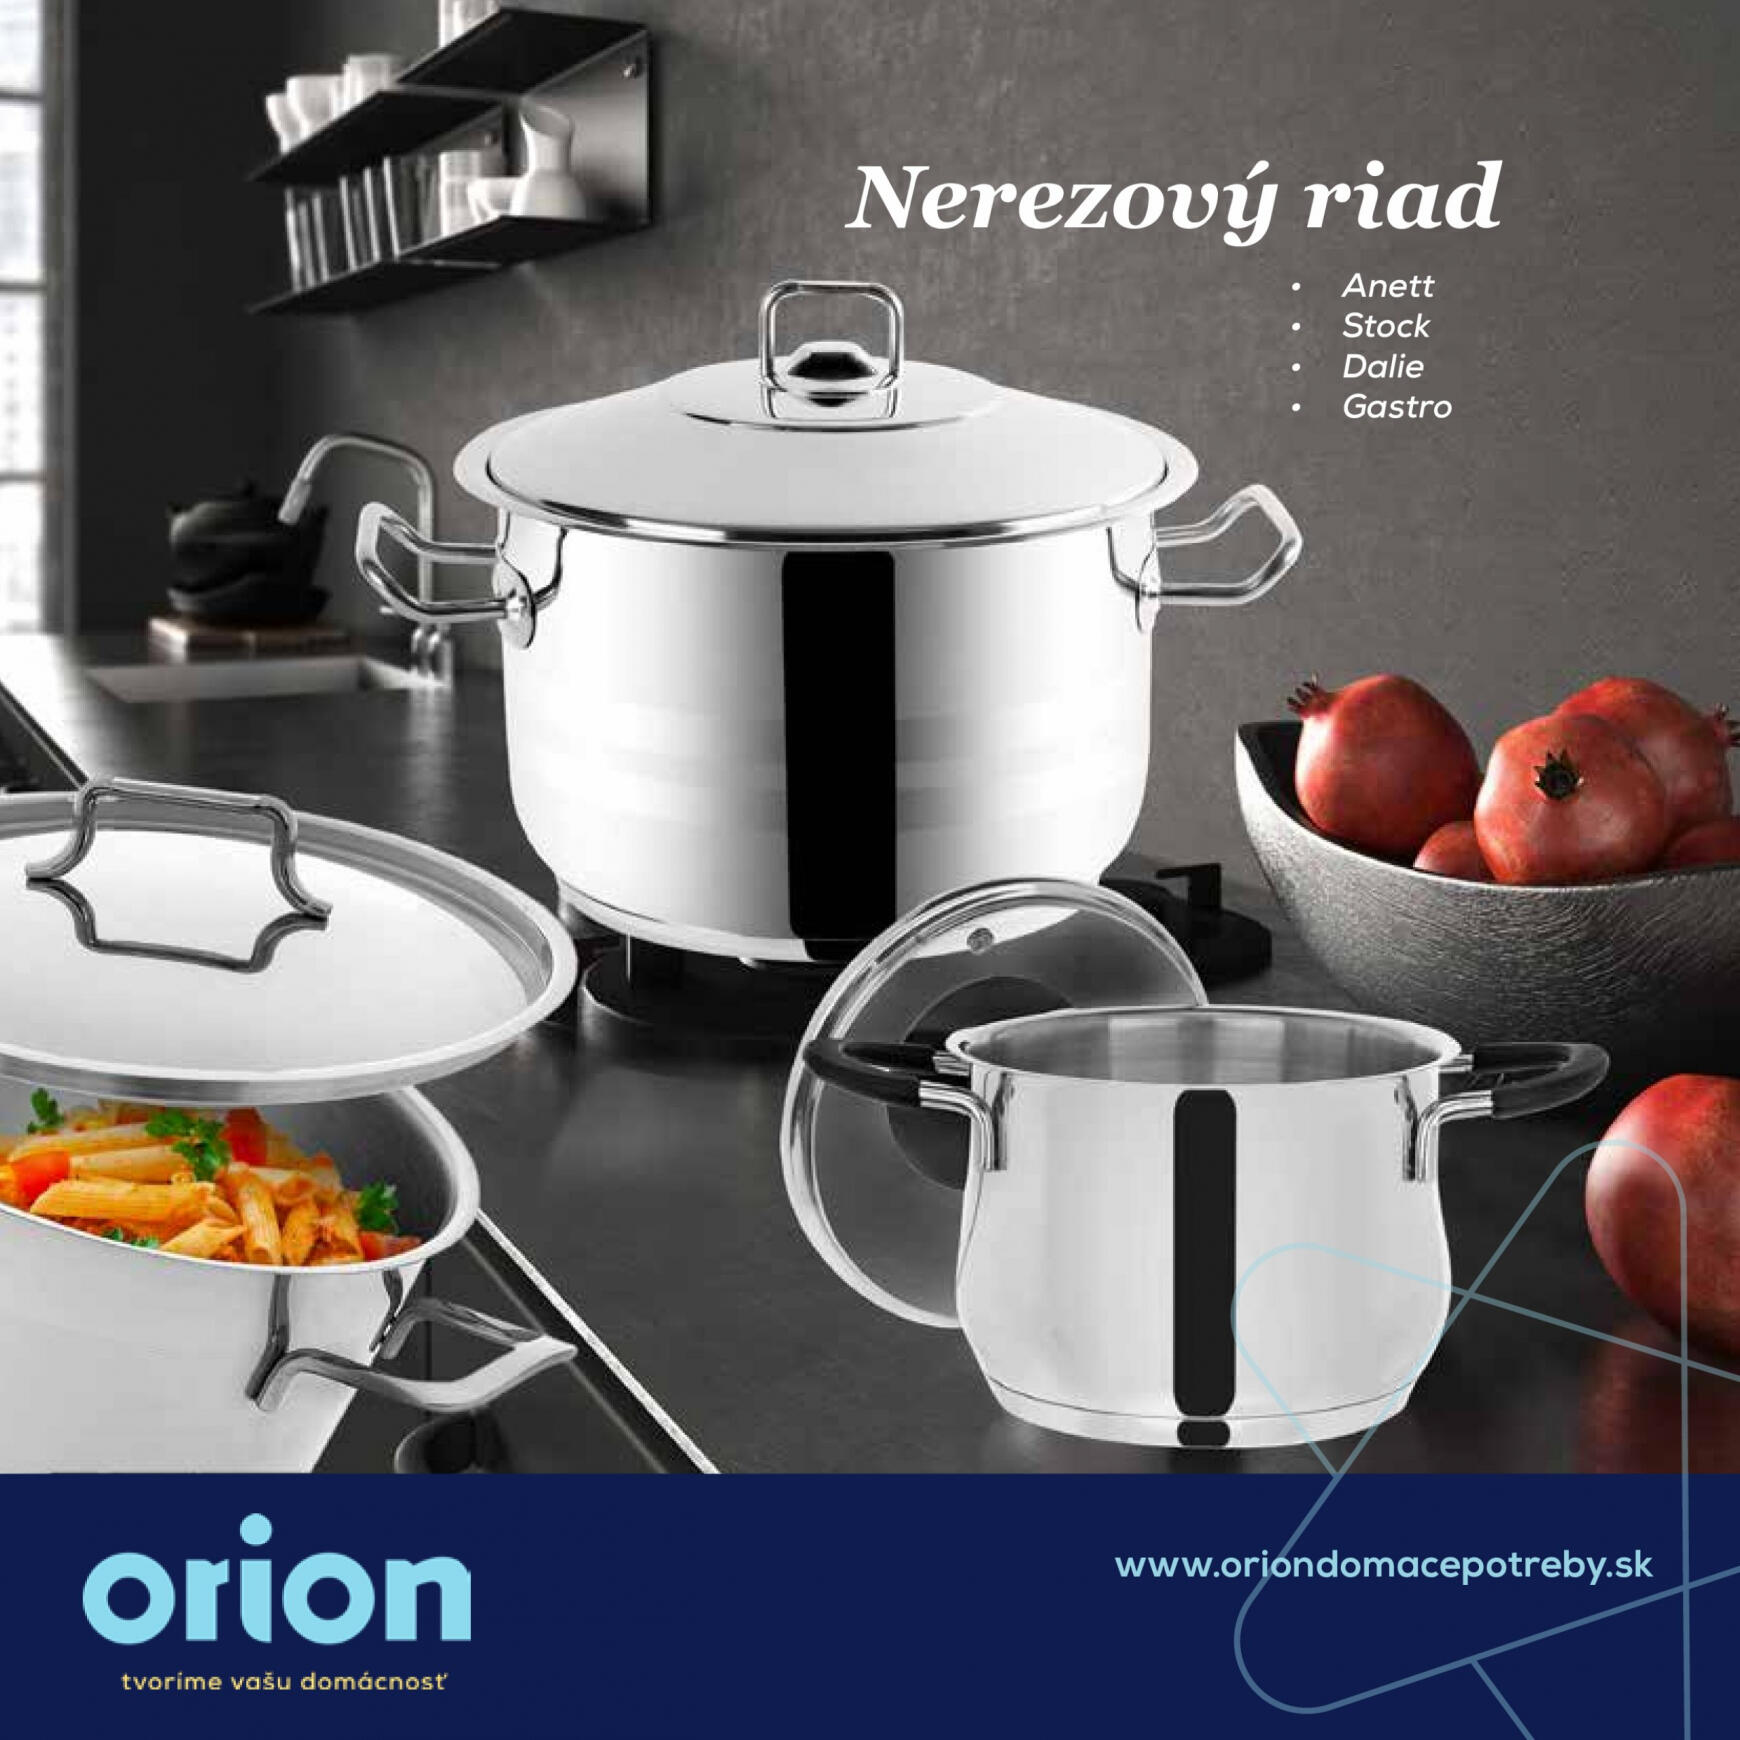 orion - Orion - Kvalitný nerezový riad do každej domácnosti - page: 1